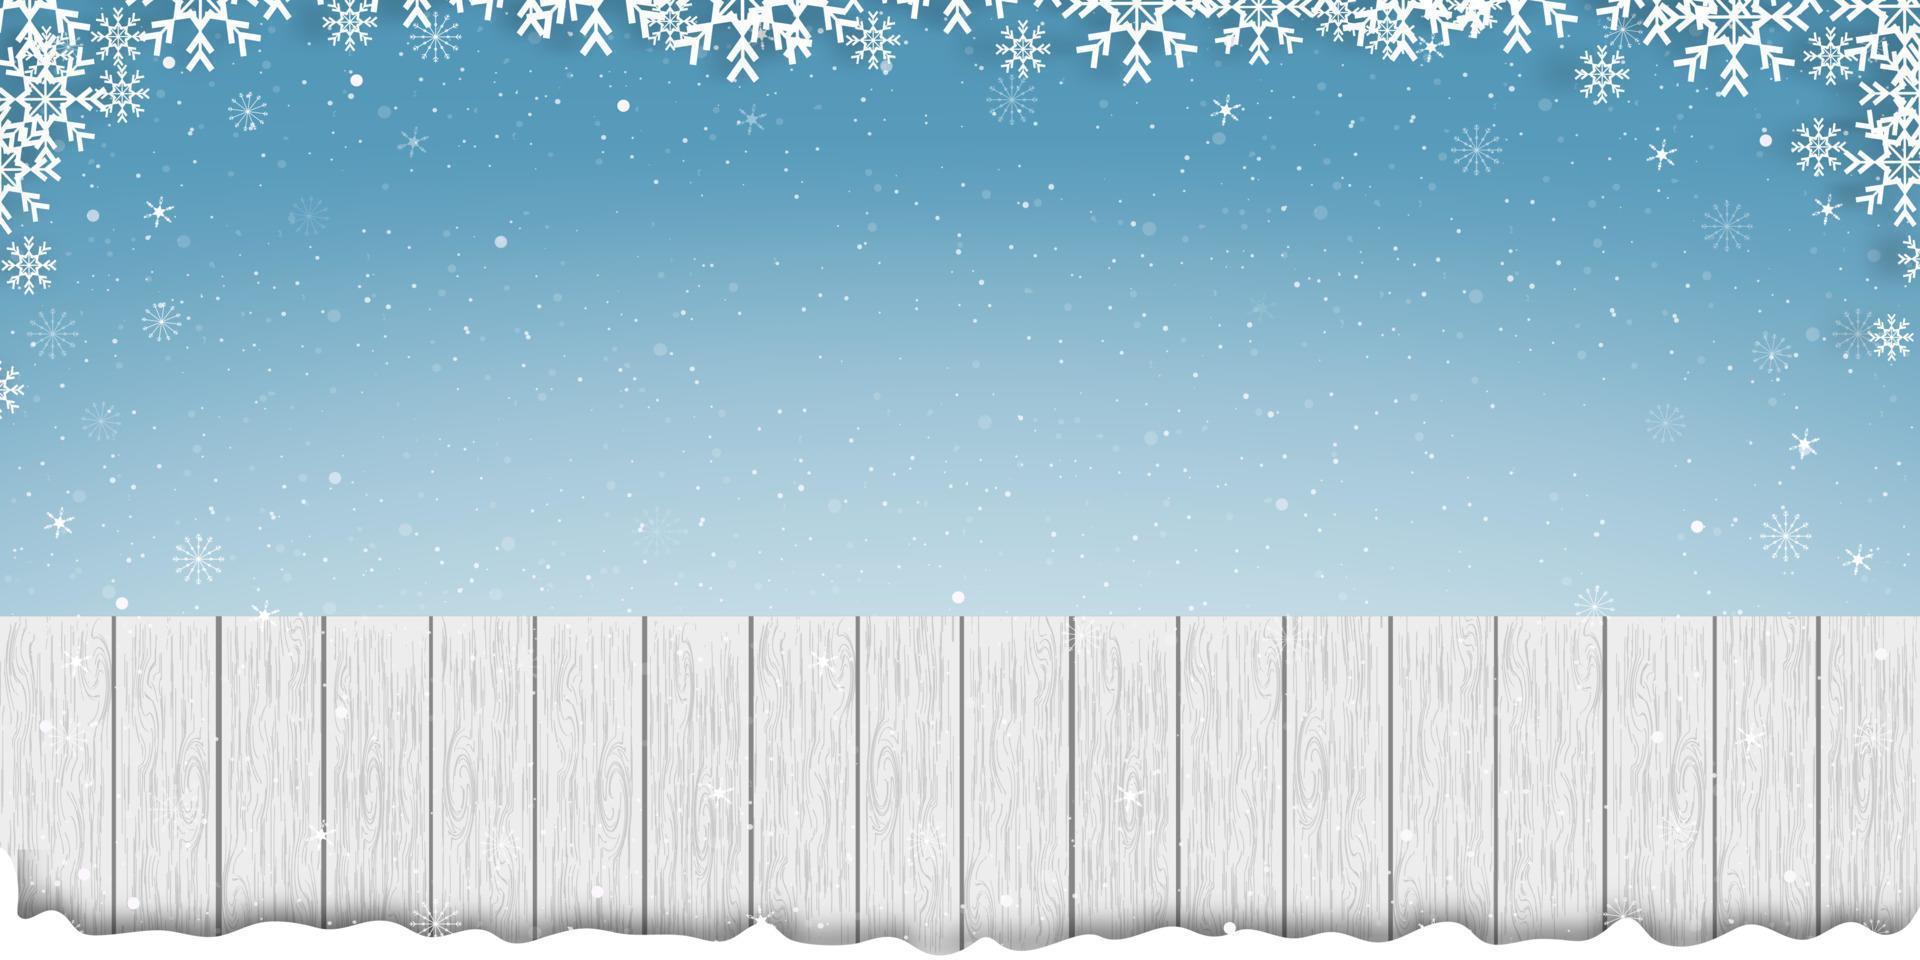 bois blanc avec cadre de flocons de neige sur fond de ciel bleu, bannière vectorielle de texture en bois avec scène d'hiver pour toile de fond de vacances sur le concept de promotion ou de vente de noël et du nouvel an vecteur